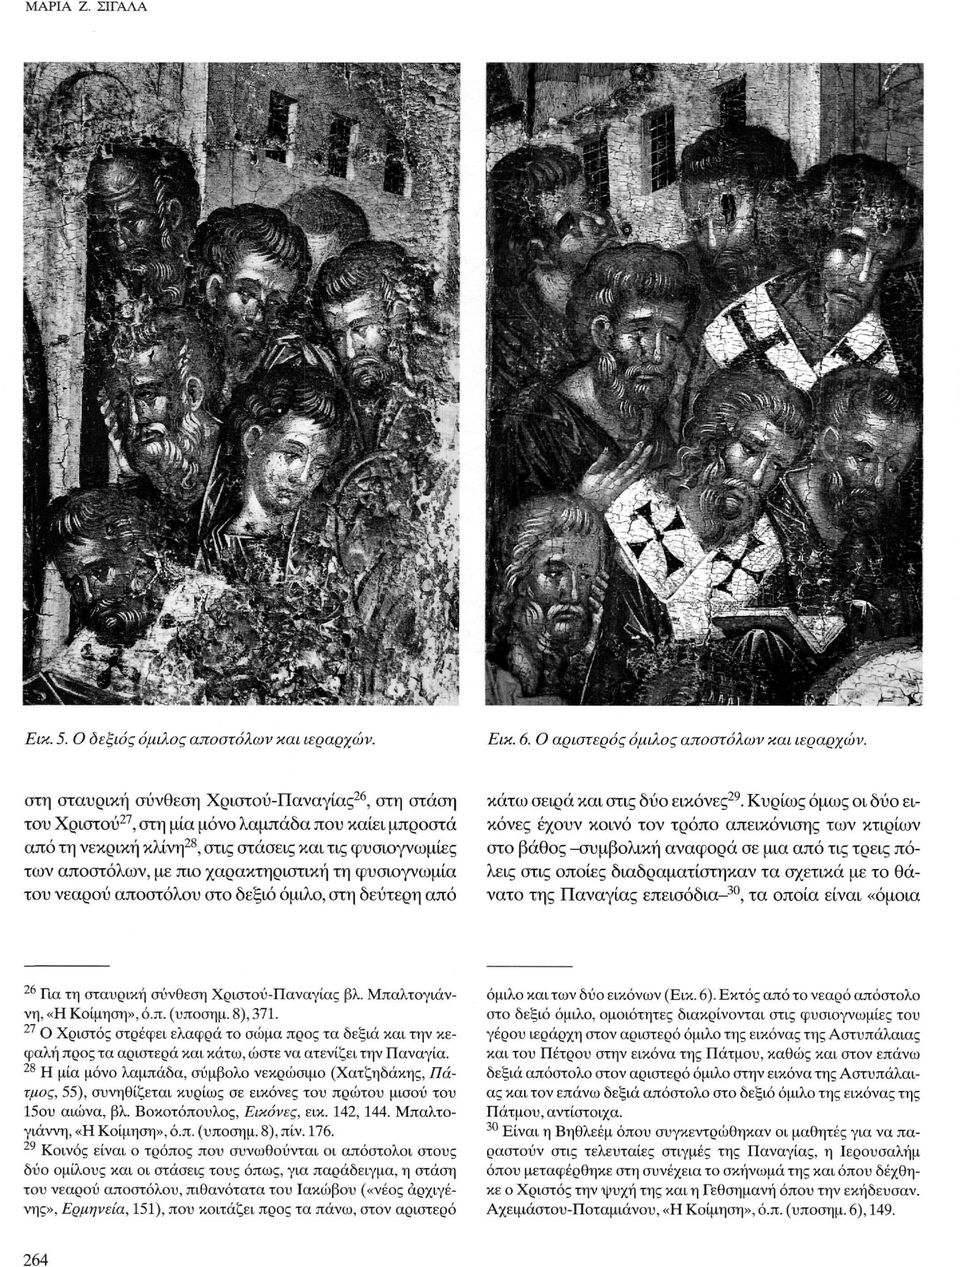 χαρακτηριστική τη φυσιογνωμία του νεαρού αποστόλου στο δεξιό όμιλο, στη δεύτερη από κάτω σειρά και στις δύο εικόνες29.